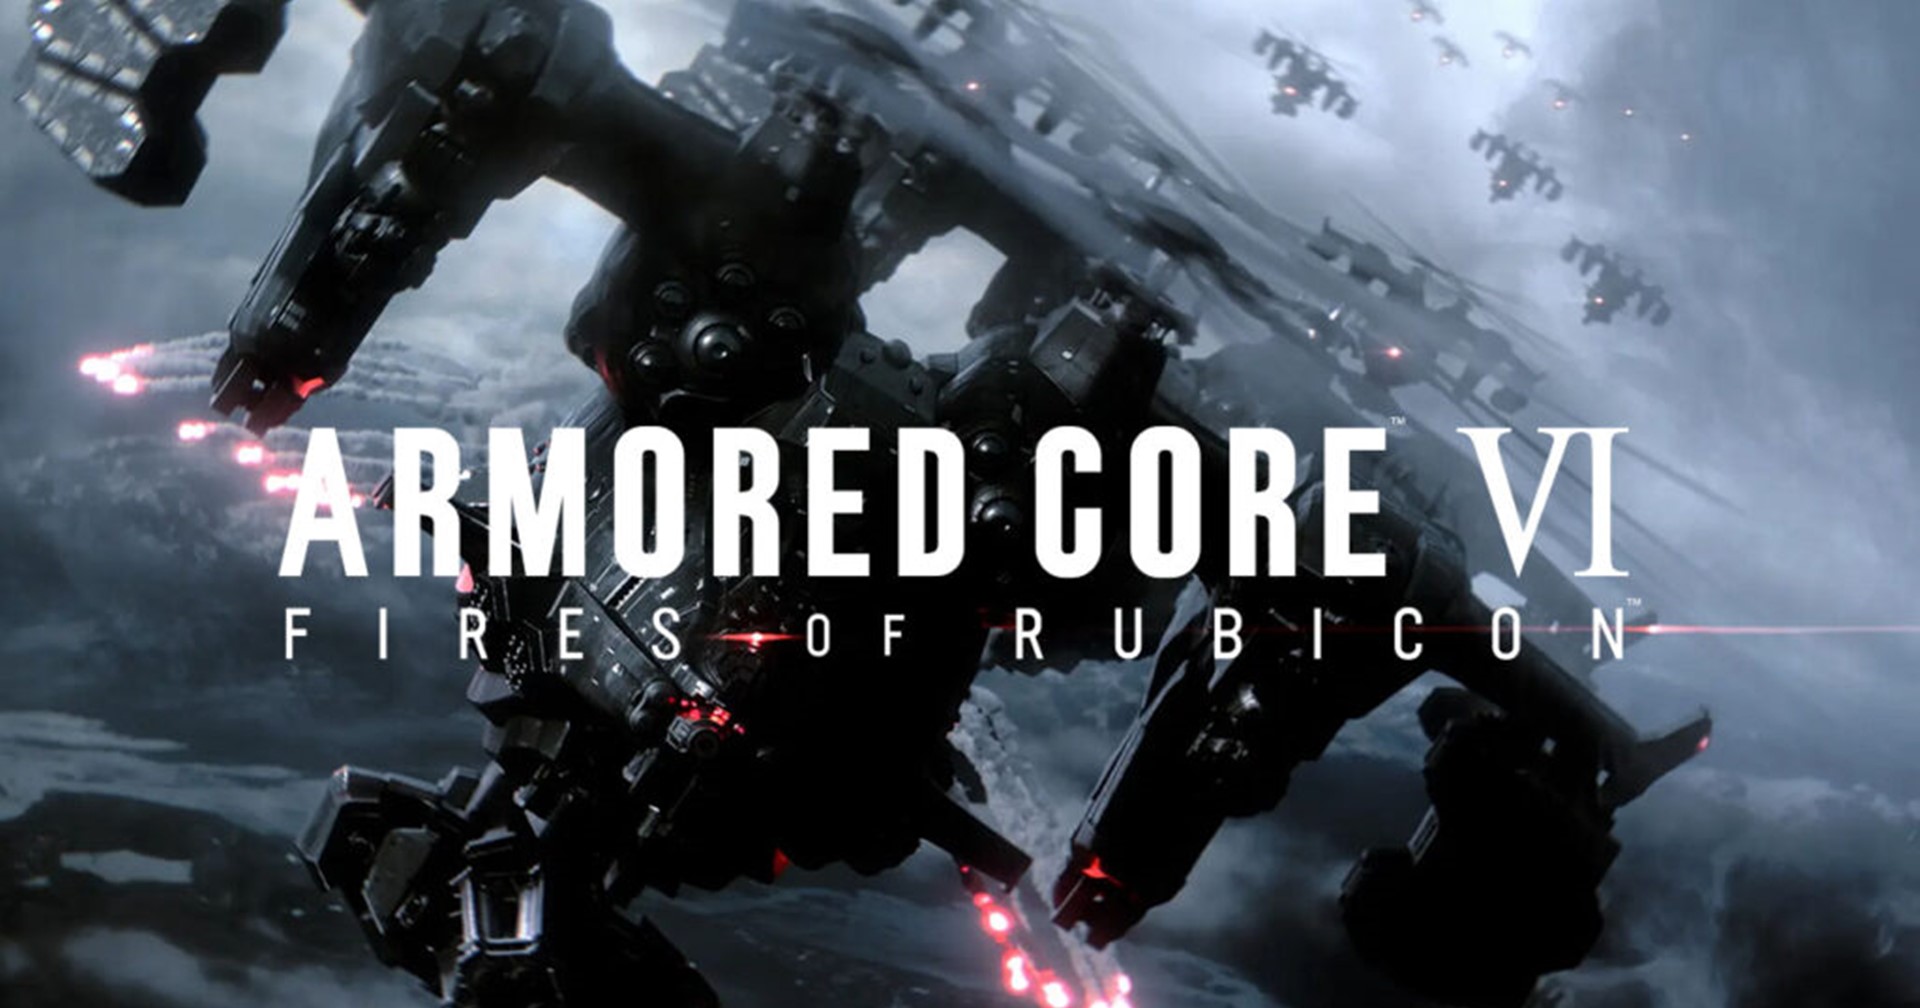 เปิดตัว Armored Core VI สงครามหุ่นกลับมาอีกครั้งโดย FromSoftware